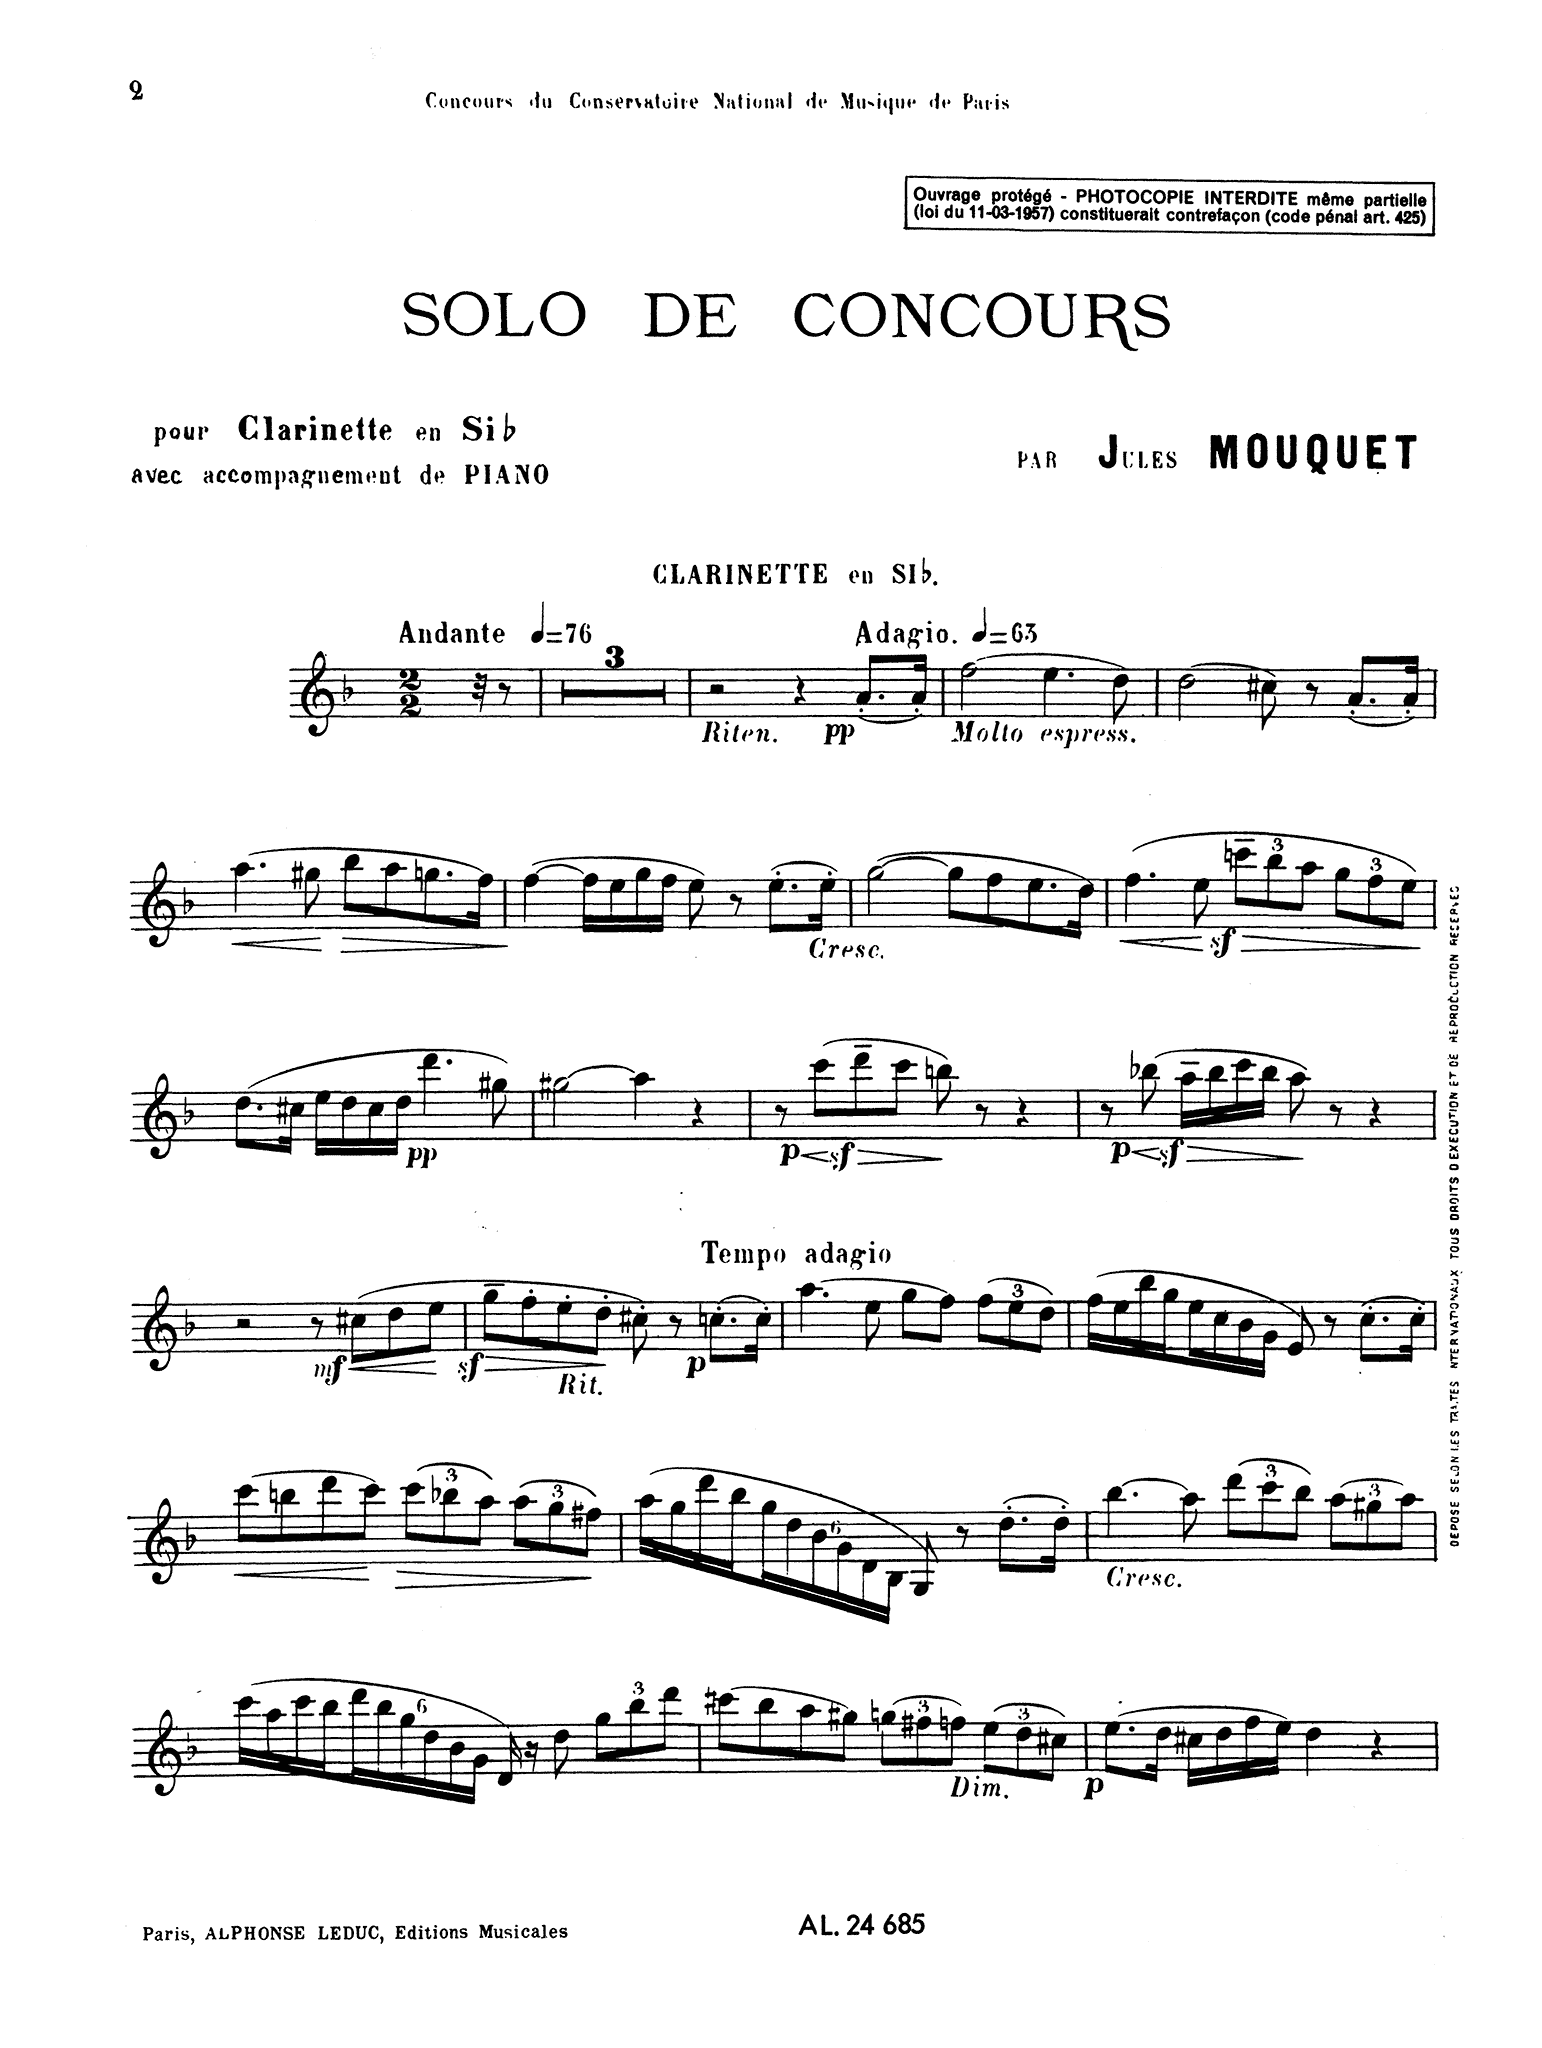 Mouquet Solo de Concours Clarinet part